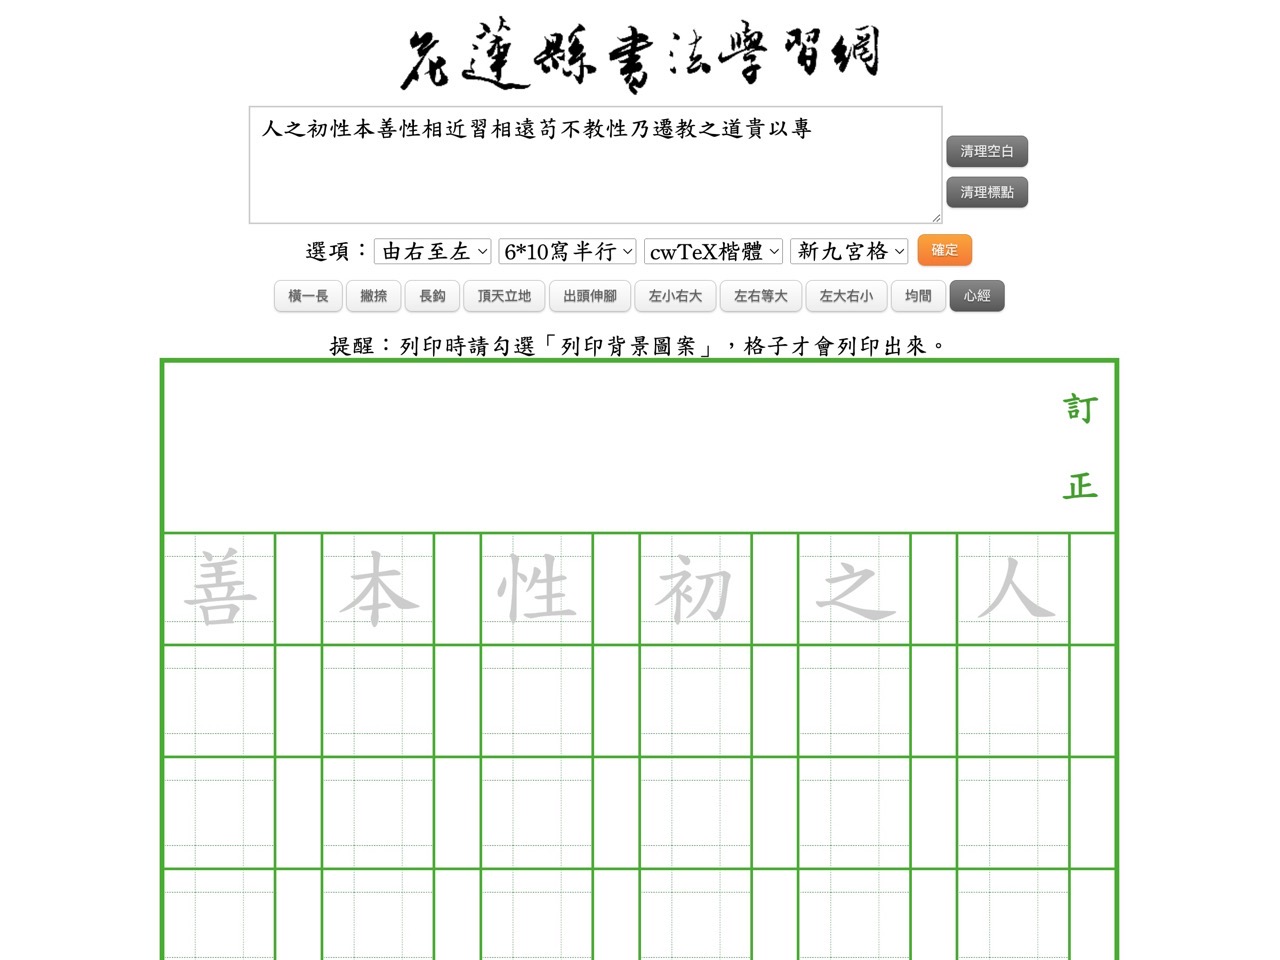 花蓮縣書法學習網：新式九宮格作業簿產生器，可選不同格式和範本